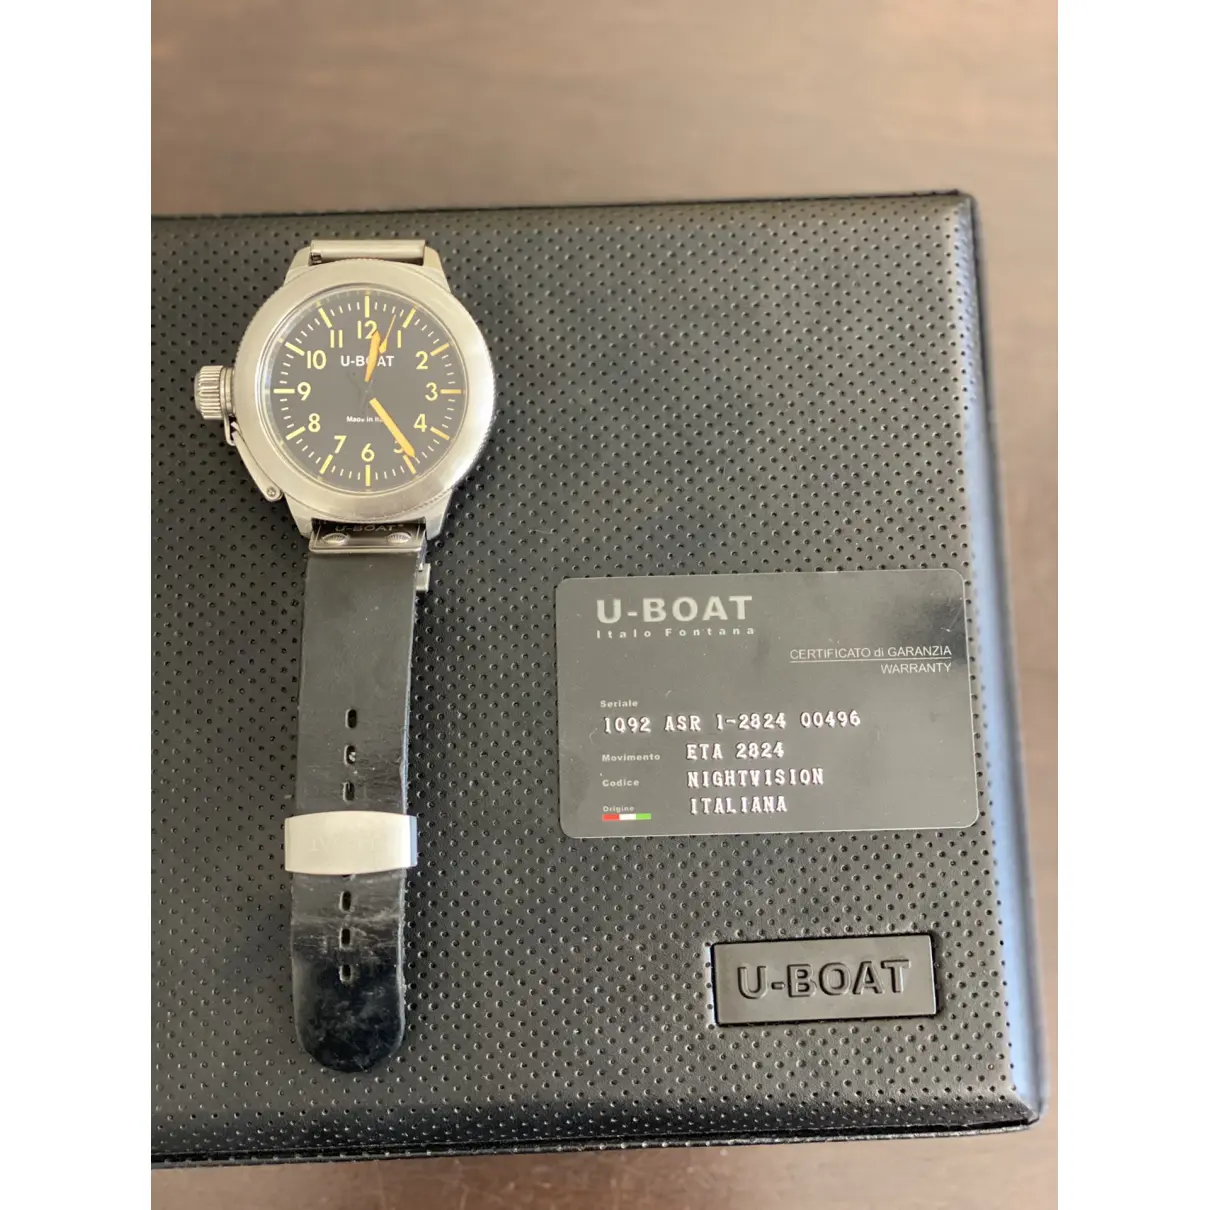 Buy U-Boat Watch online